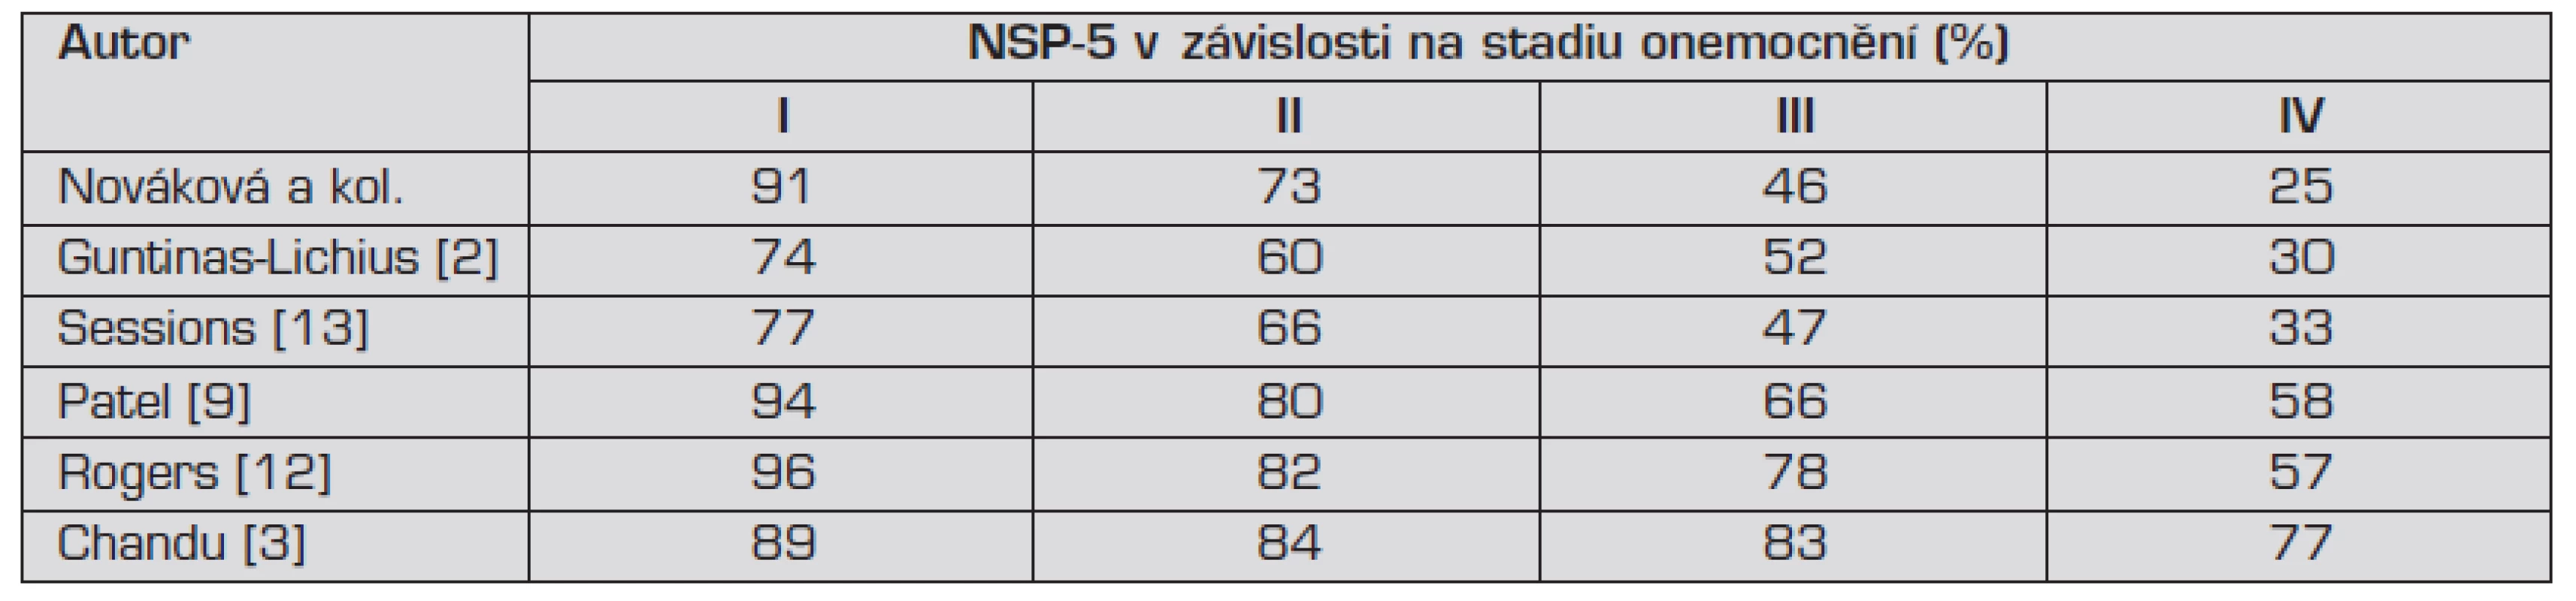 Porovnání NSP-5 v našem souboru s výsledky zahraničních studií